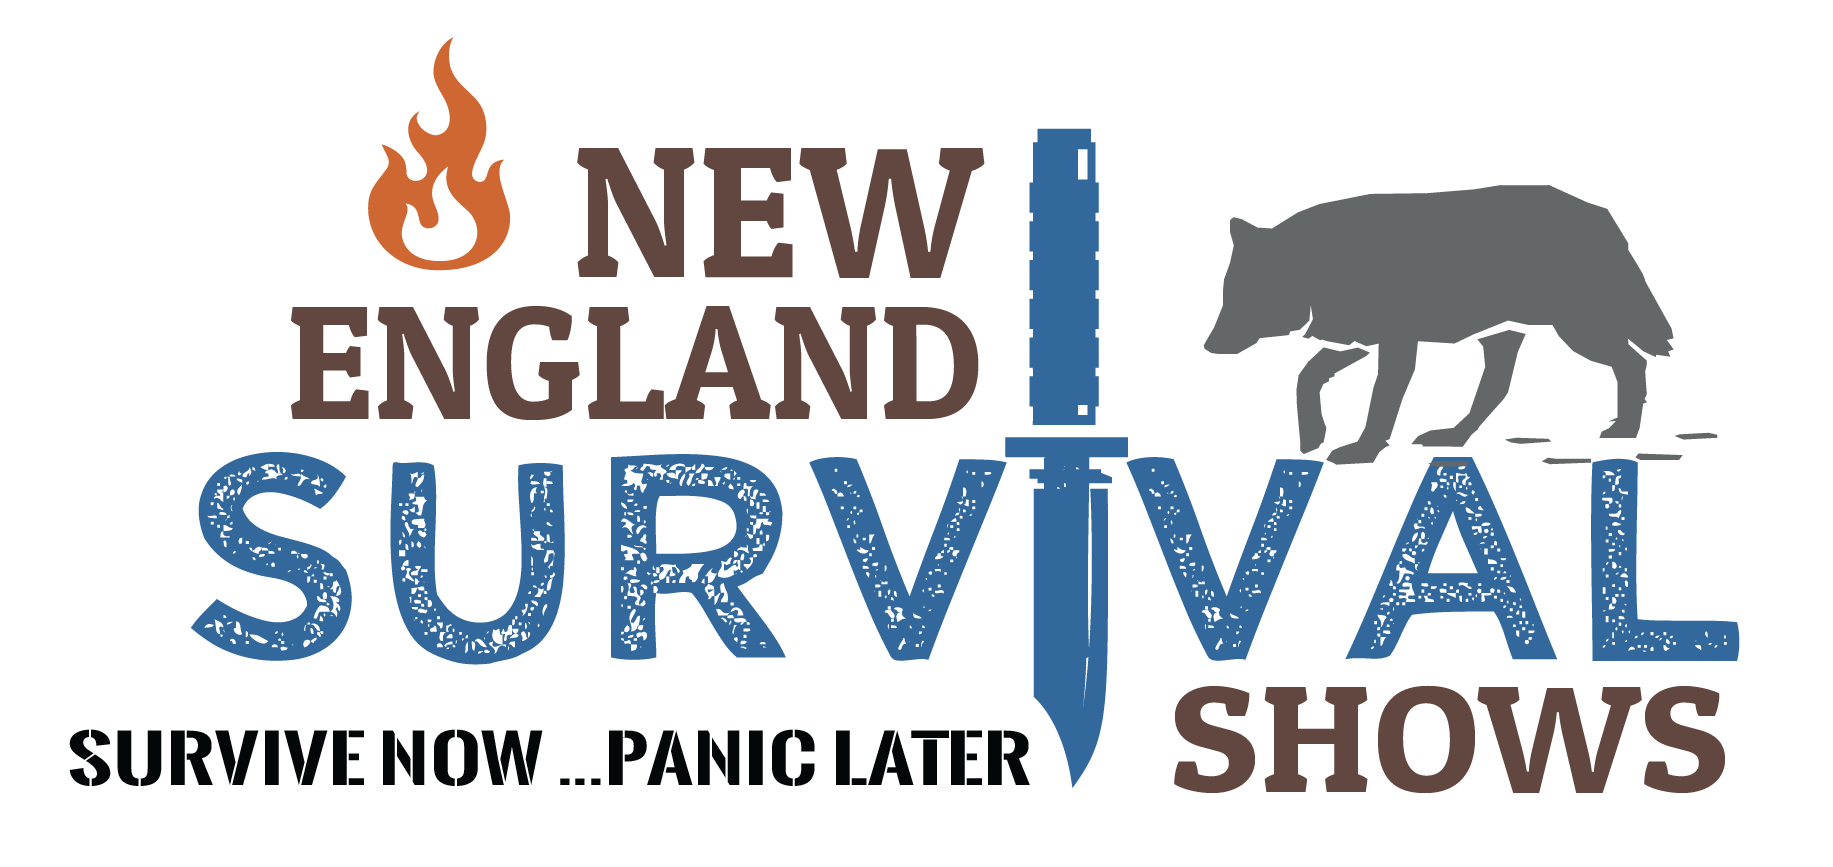 New England Survival Shows Logo